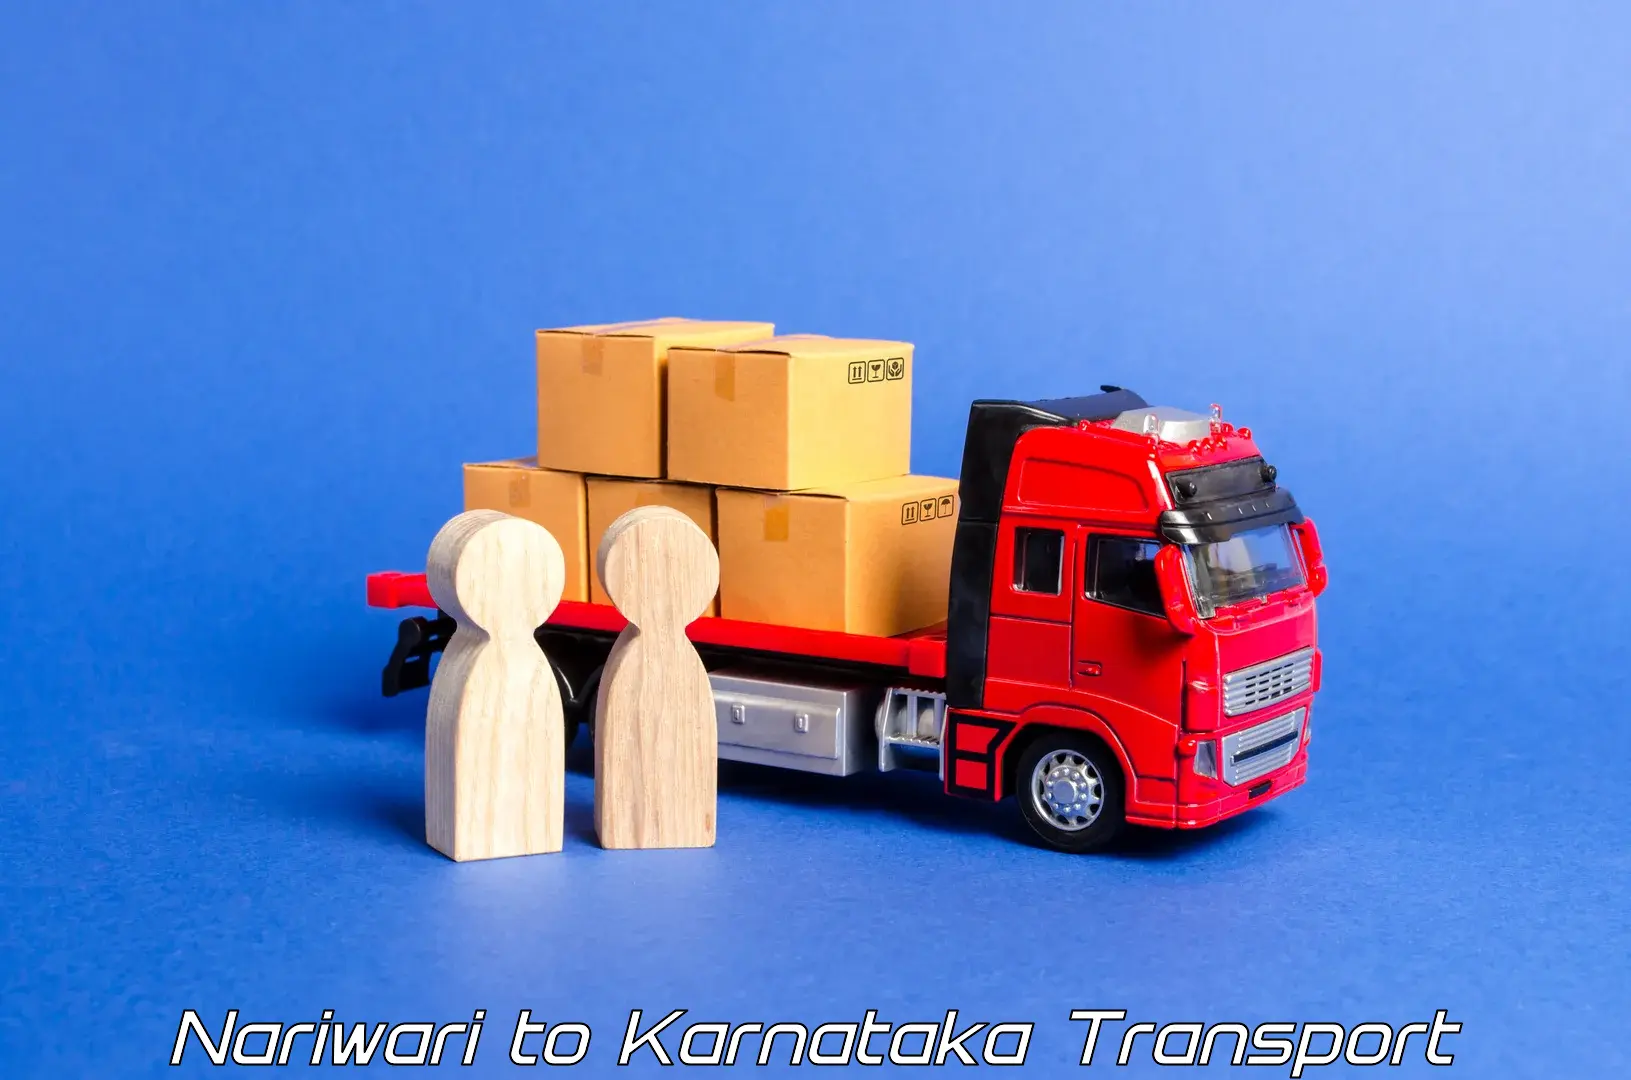 Truck transport companies in India Nariwari to Karwar